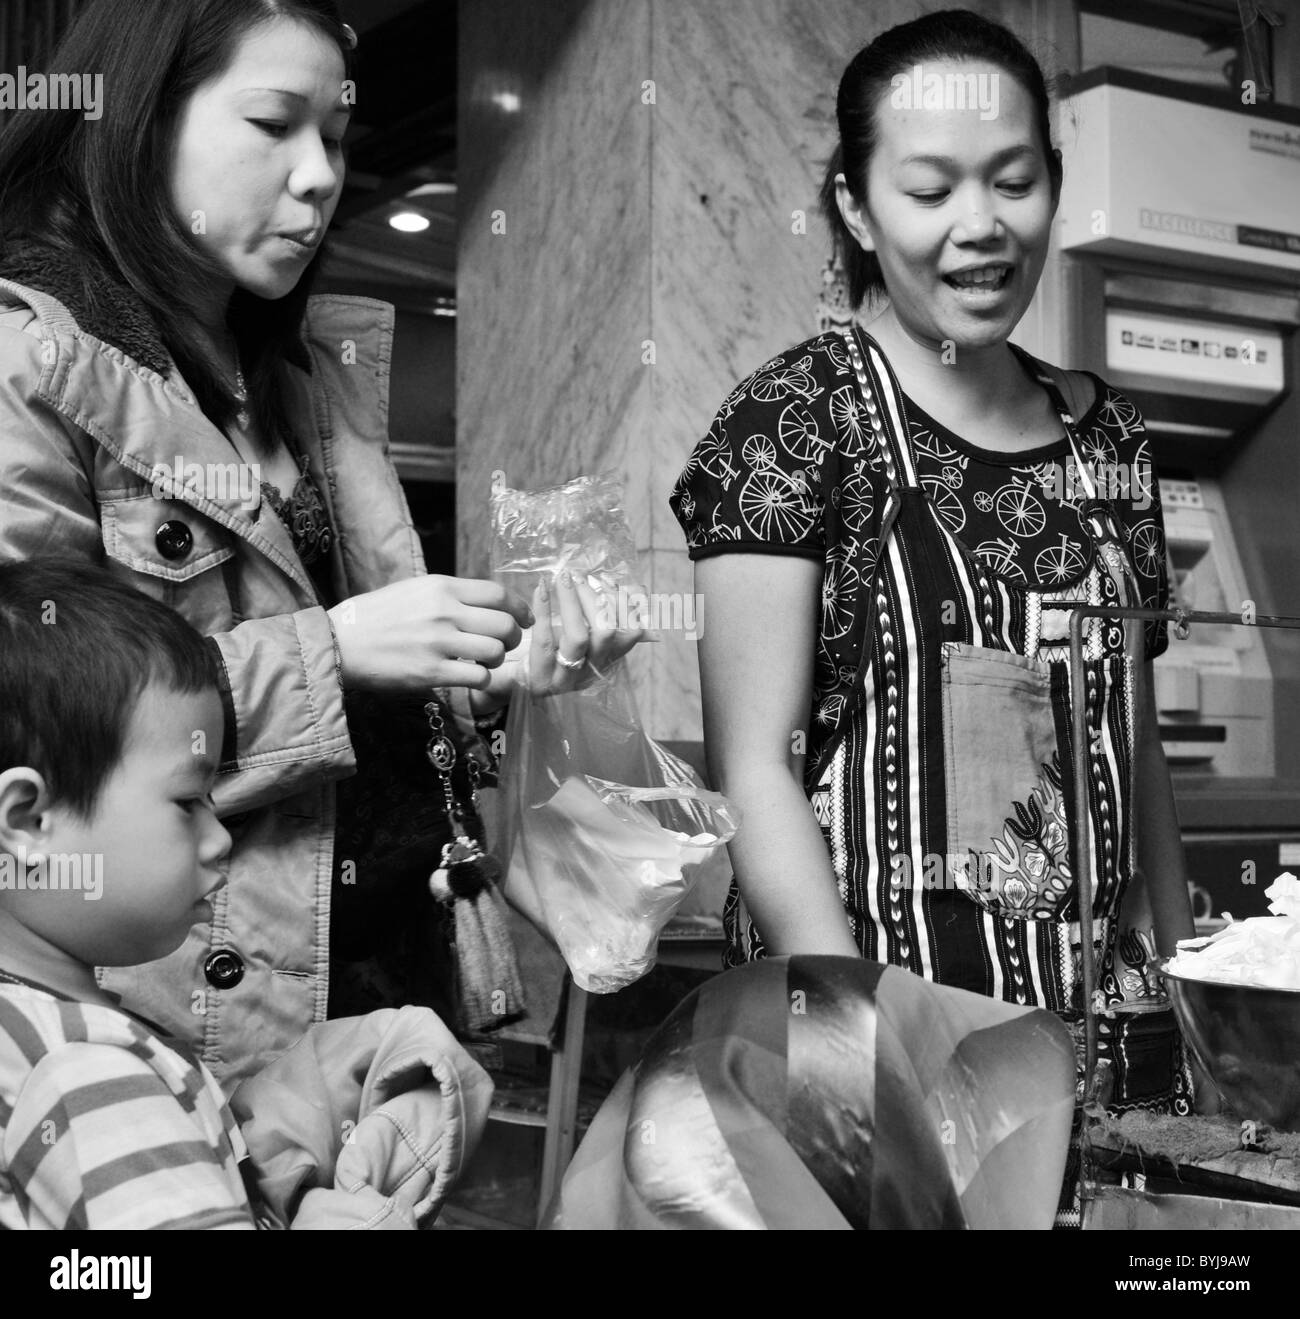 Photographie en noir et blanc d'une mère et son fils shopping dans un marché thaïlandais Banque D'Images